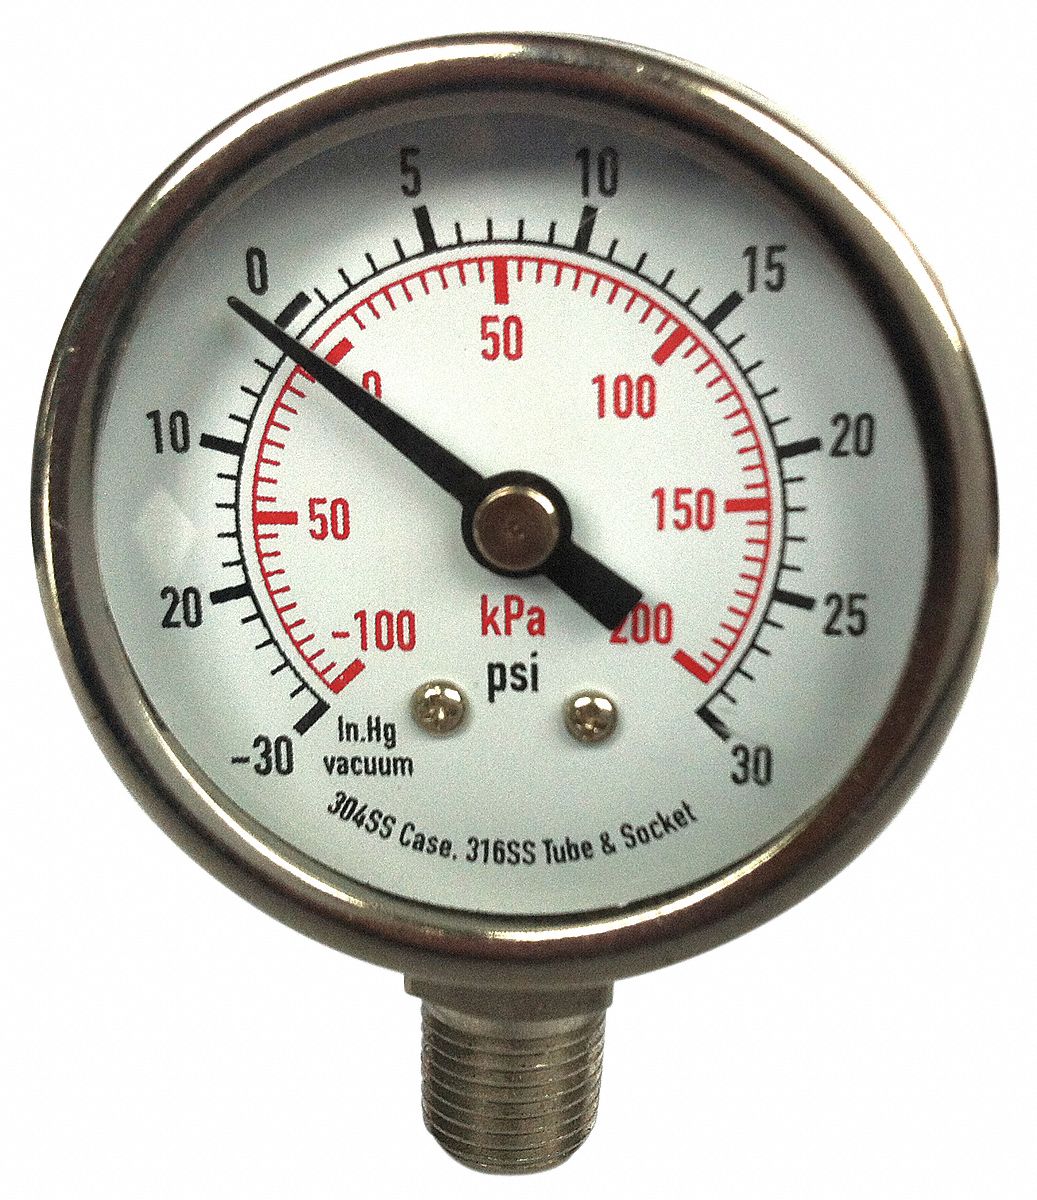 GRAINGER APPROVED Vacuum Gauge, 100 kPa Vac to 0, 30 in Hg 